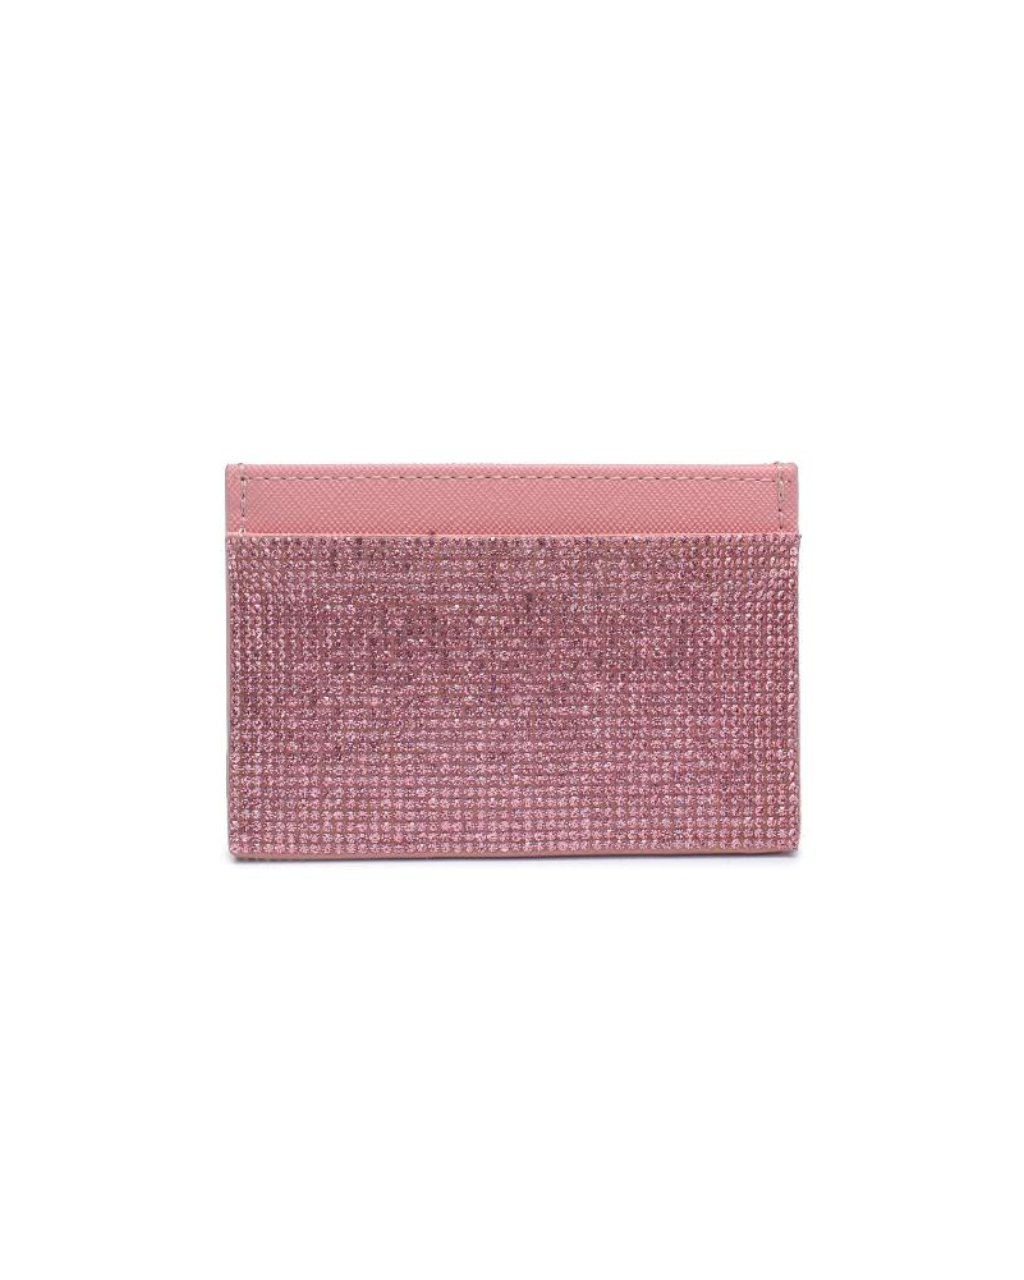 Gigi Cardholder Pink, Evening Bag by Urban Expressions | LIT Boutique